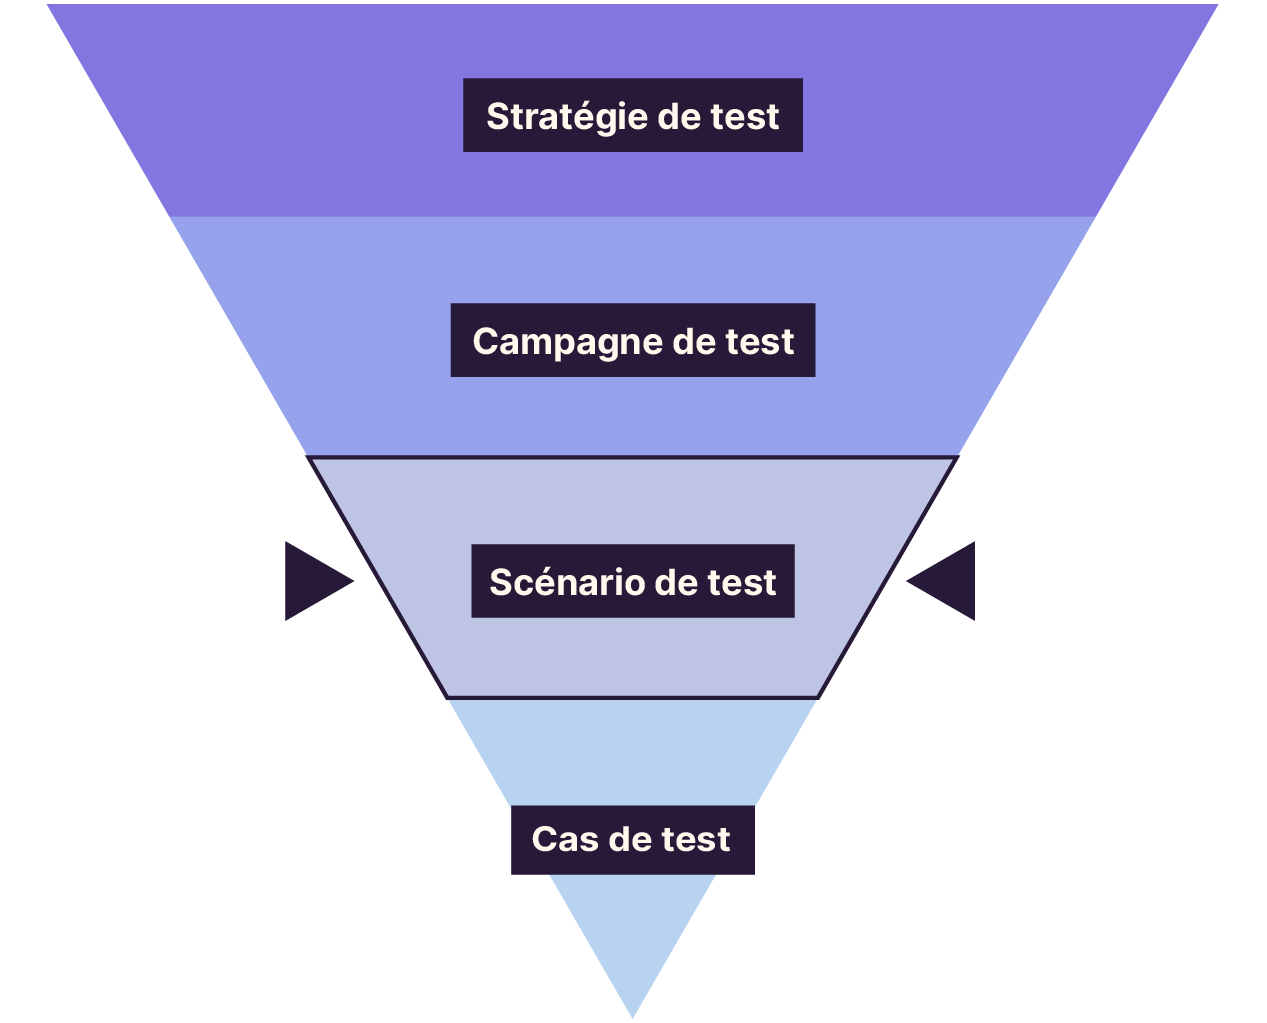 La pyramide du niveau le plus bas au plus élevé : stratégie de test, campagne de test, scénario de test, cas de test. L’étage “scénario de test” est mis en avant.